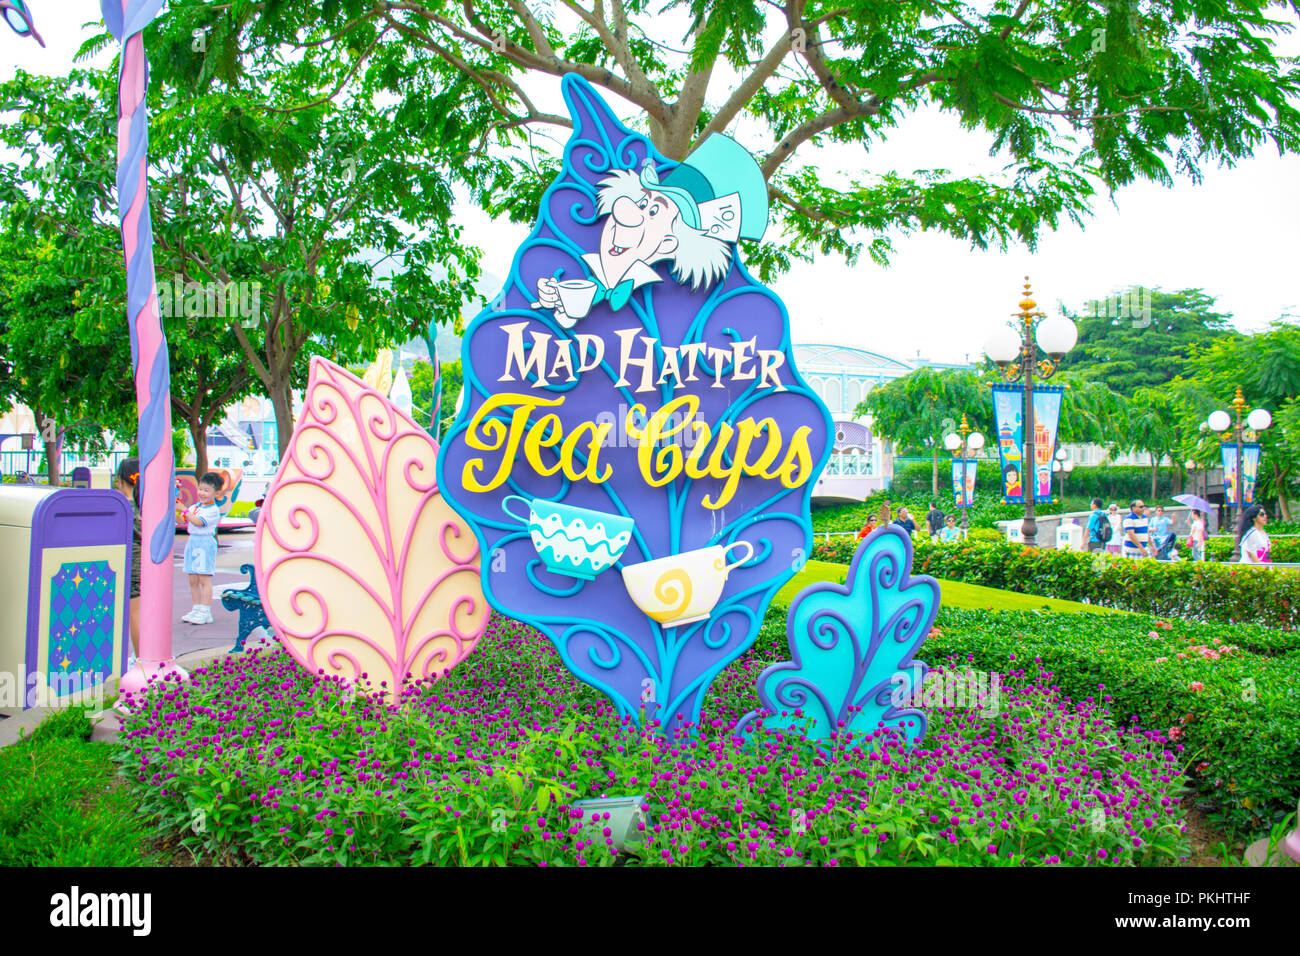 Mad Hatter Cups attraction at Hong Kong, Kong Stock Photo -